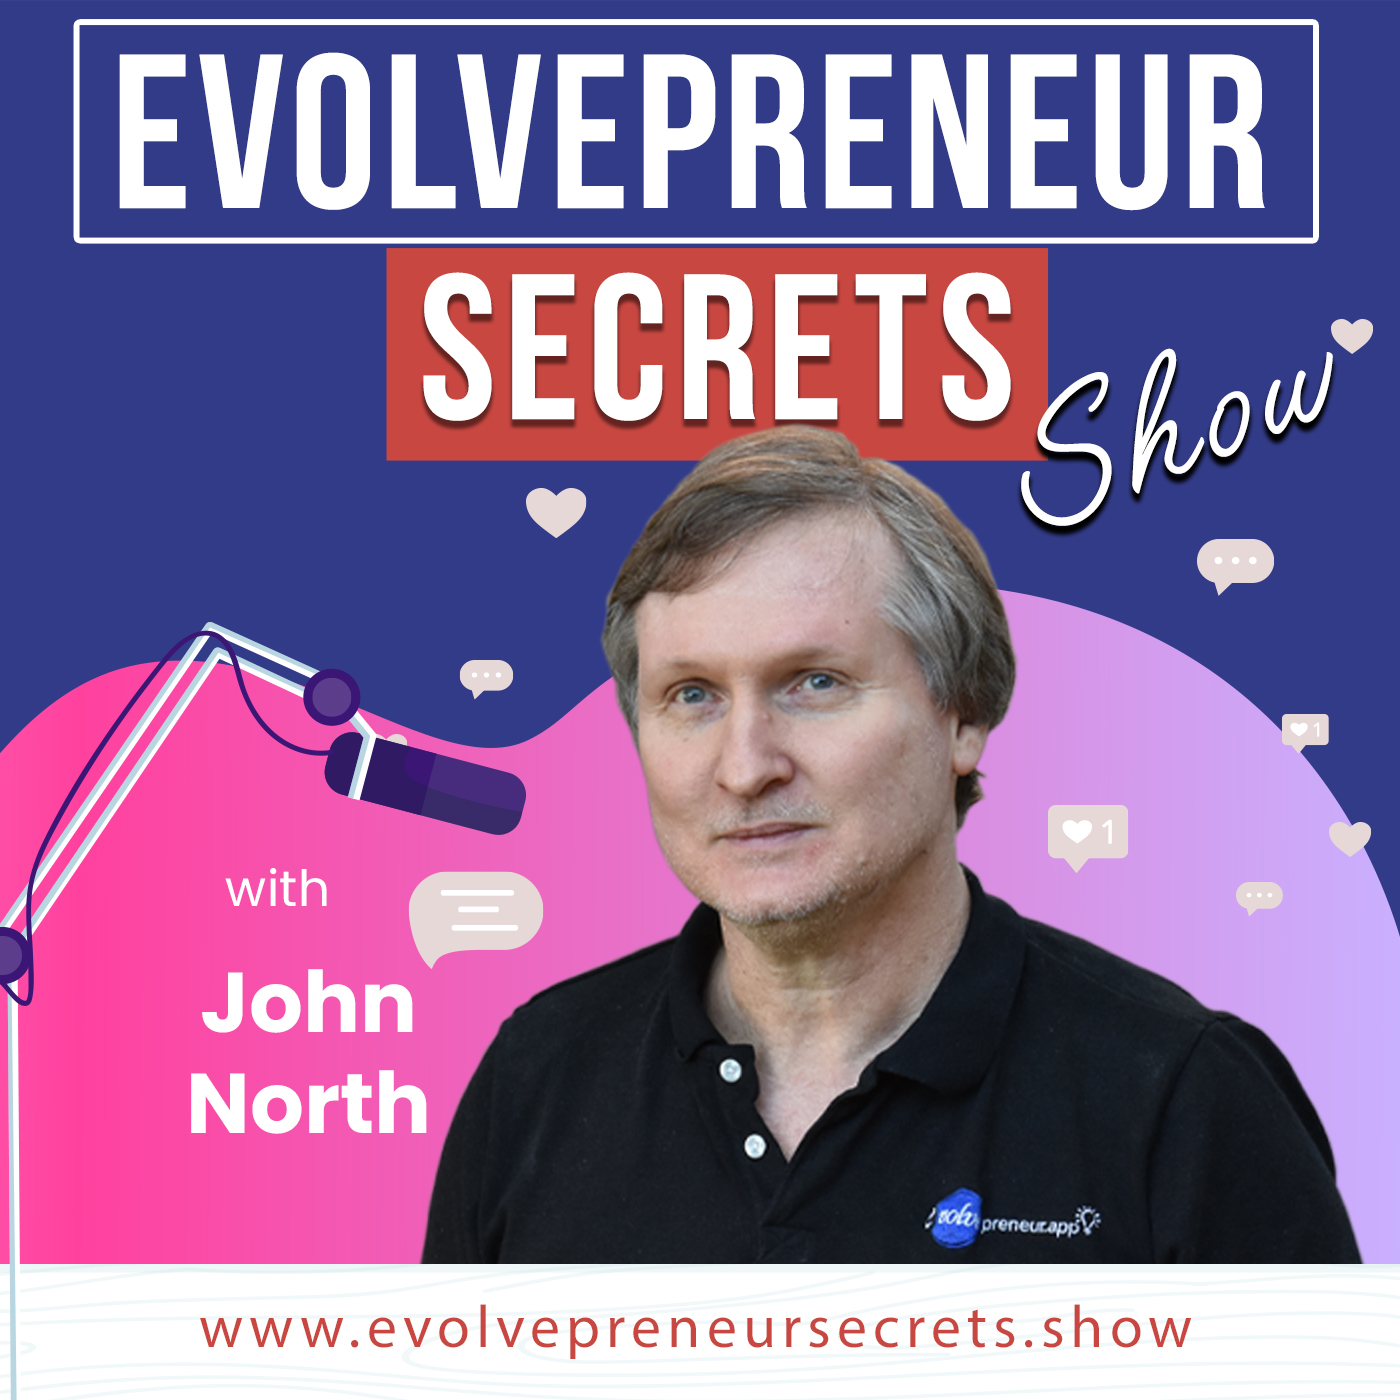 Evolvepreneur Secrets for Entrepreneurs Show